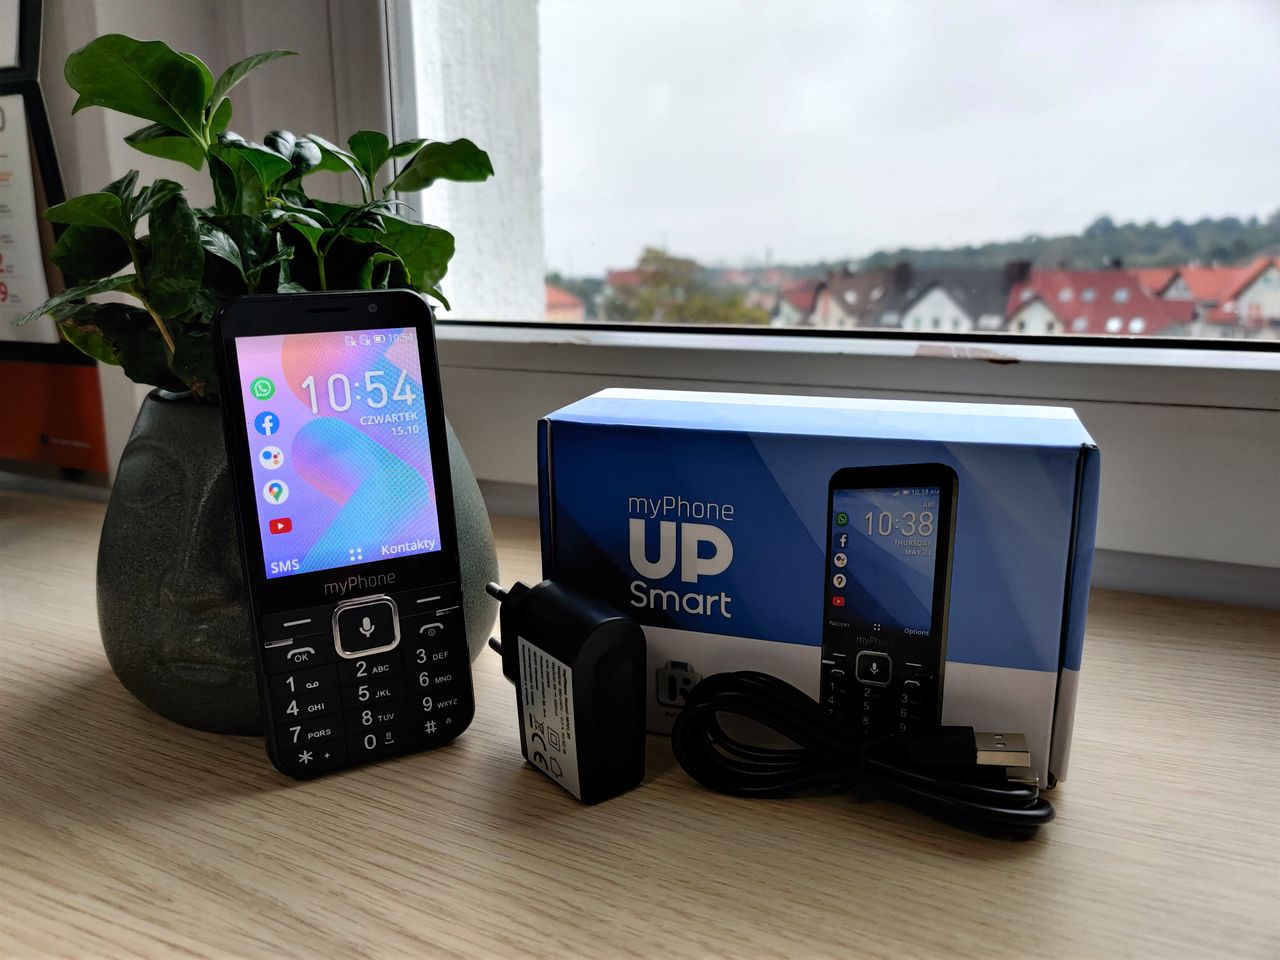 myPhone UP Smart — klawiszowy średniak z systemem KaiOS + [KONKURS]